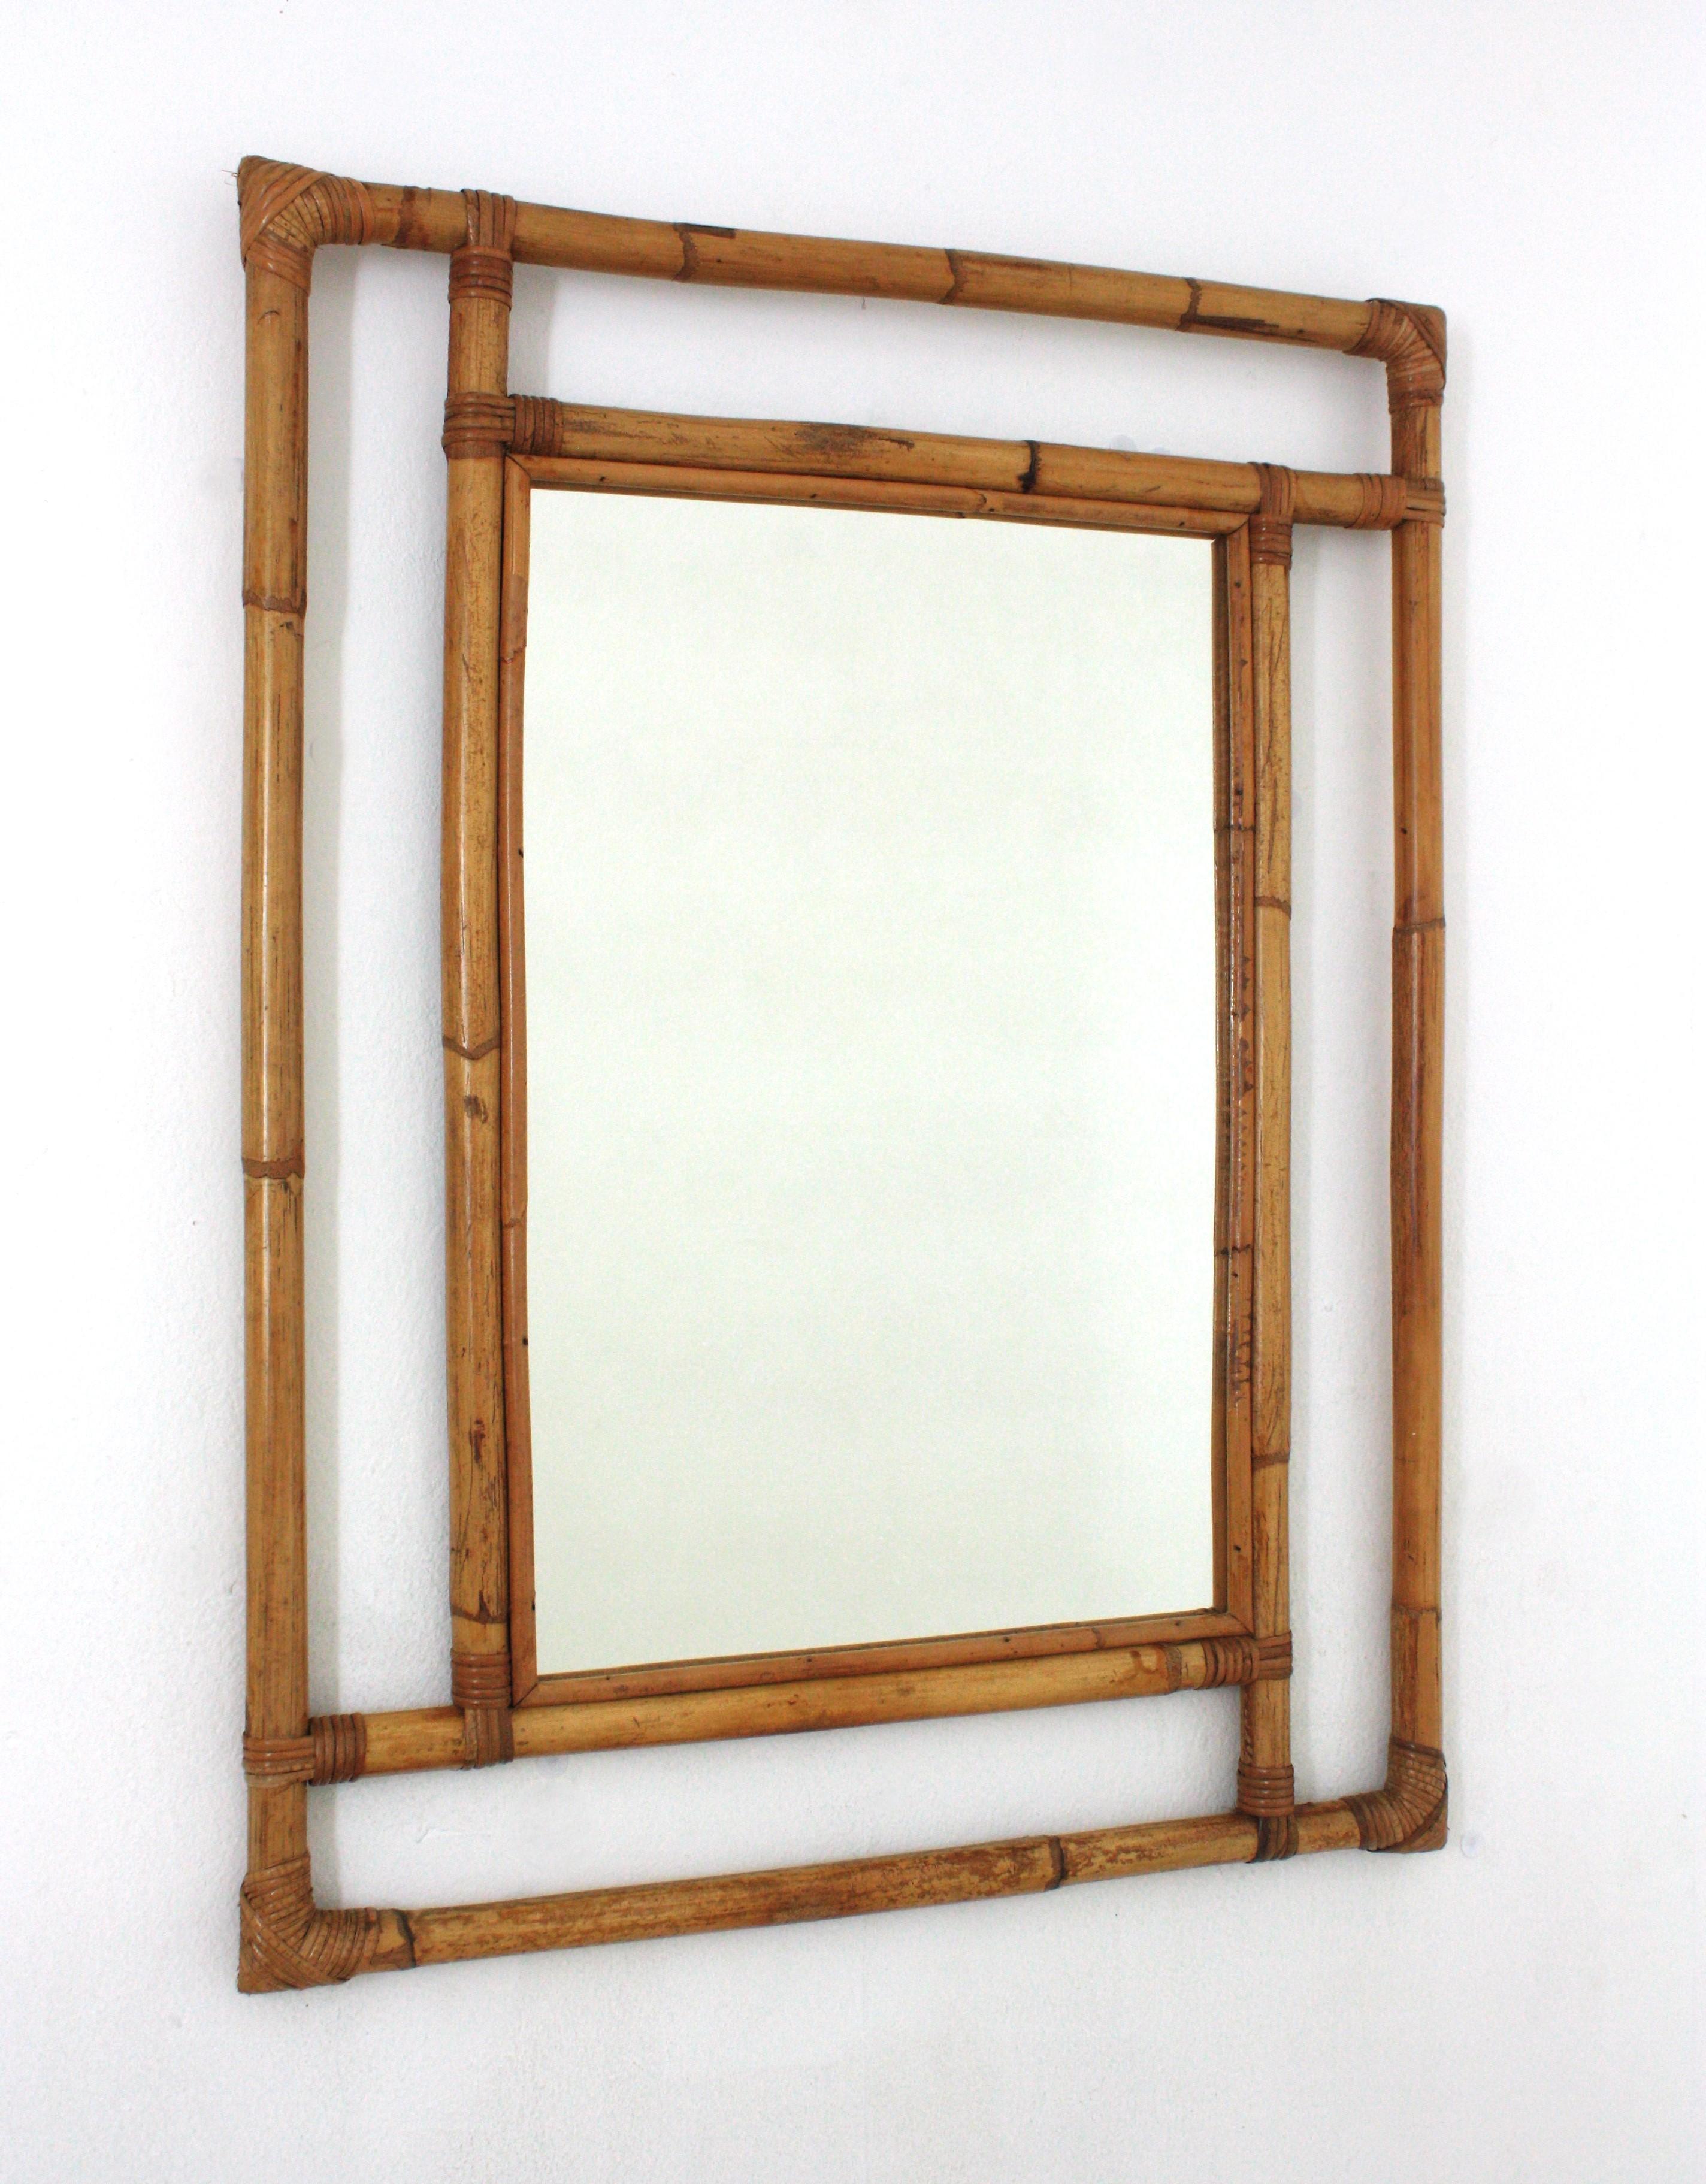 Miroir mural rectangulaire en bambou et rotin
Magnifique miroir rectangulaire de style Tiki, fabriqué à la main avec de la canne de bambou. Espagne, années 1960.
Cadre très décoratif en bambou fabriqué à la main avec des formes géométriques, des